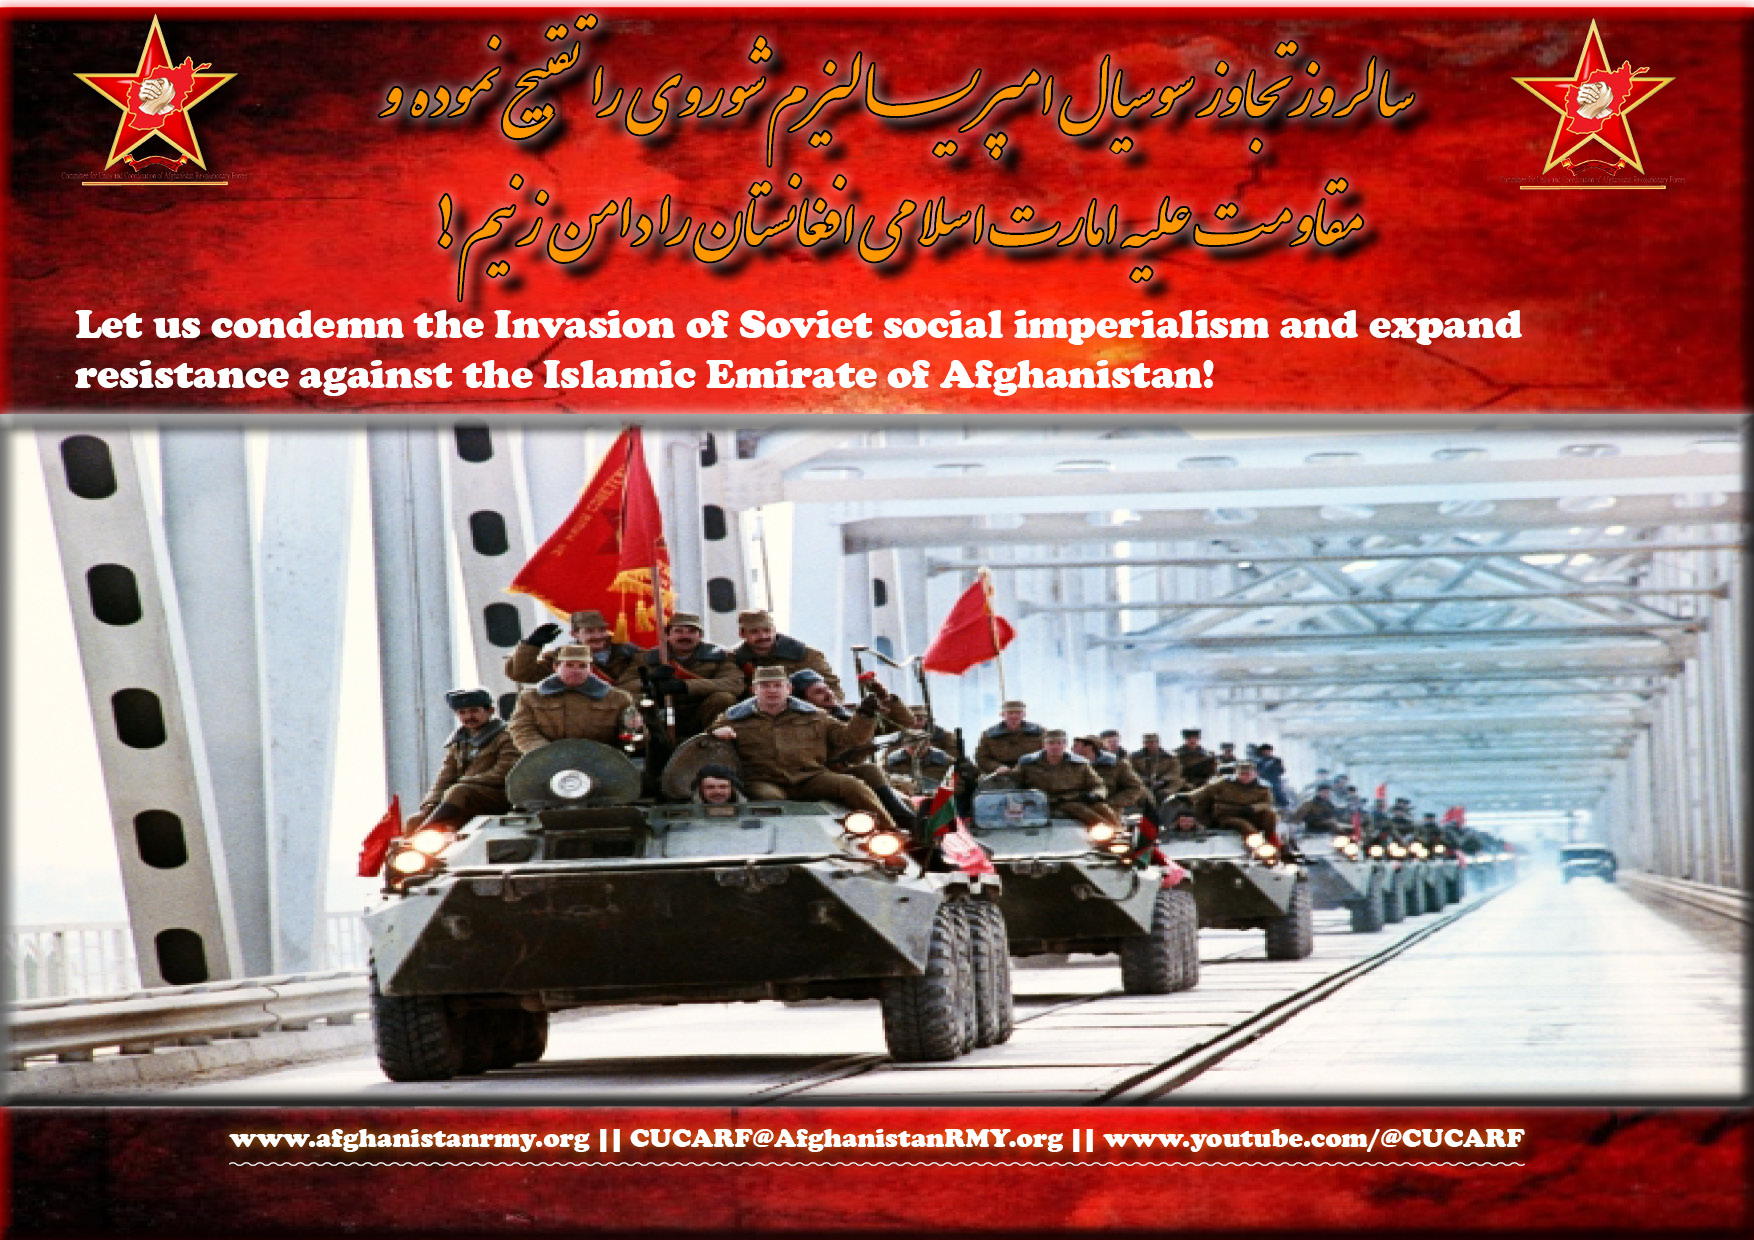 www.afghanistanrmy.org